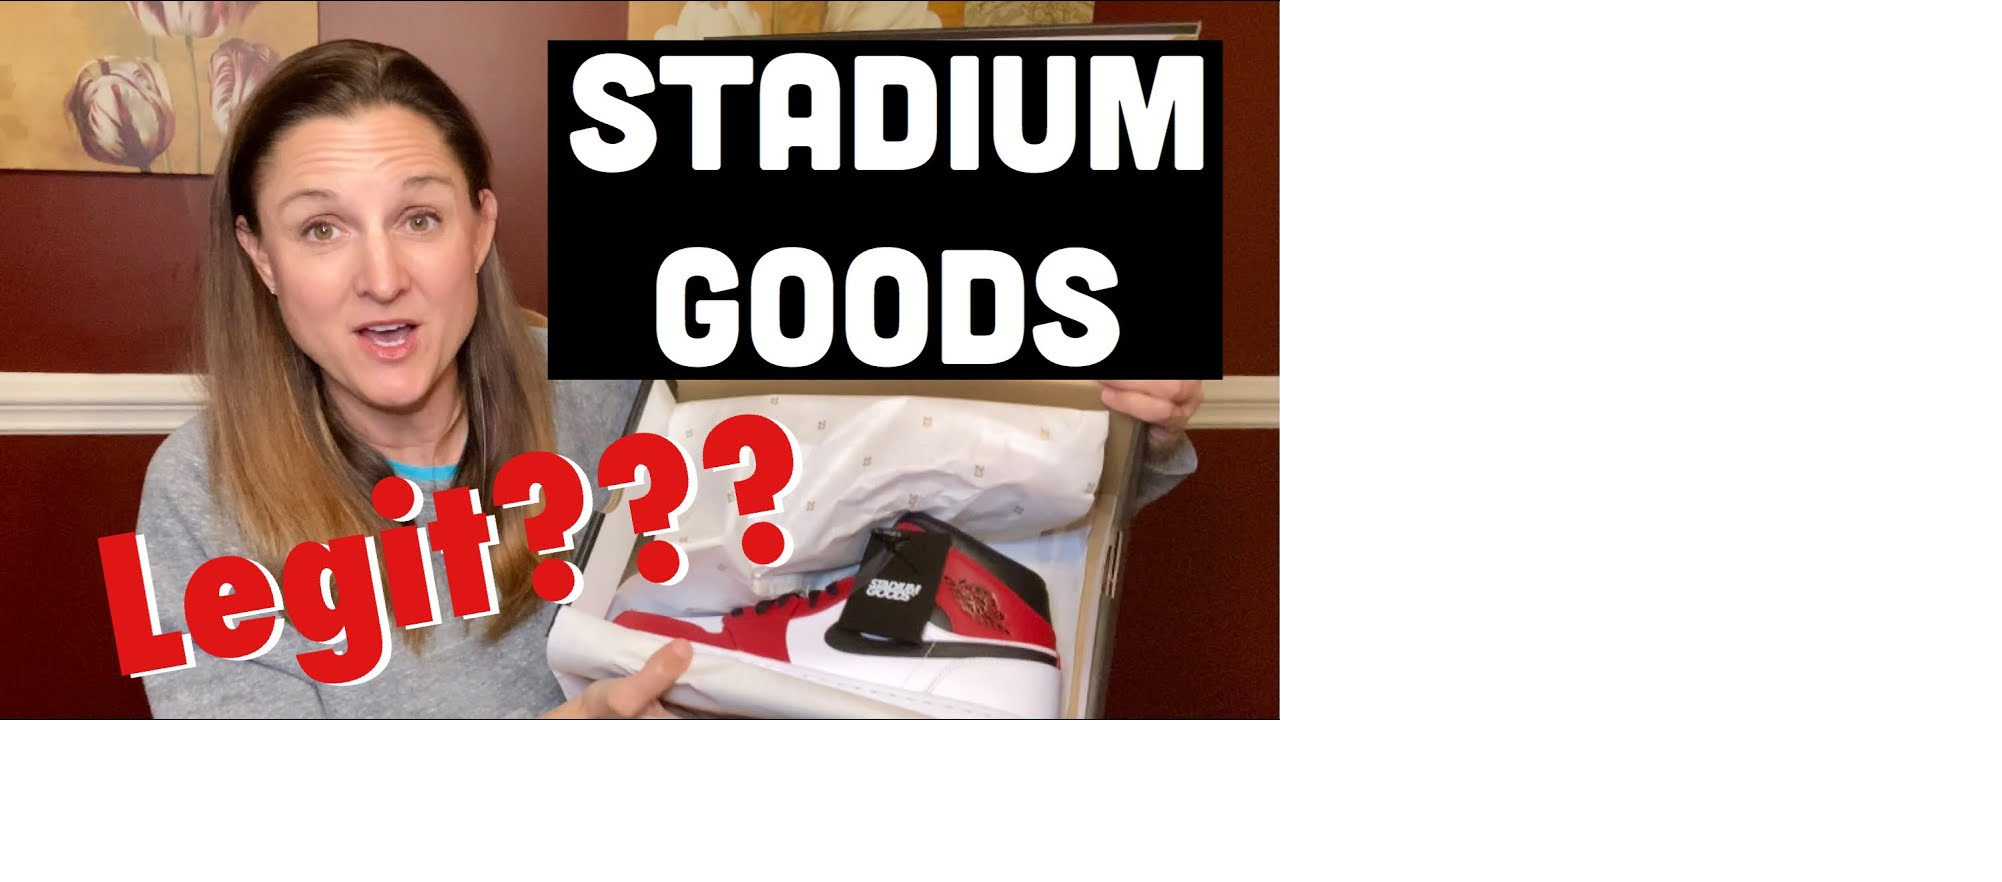 Is Stadium Goods Legit